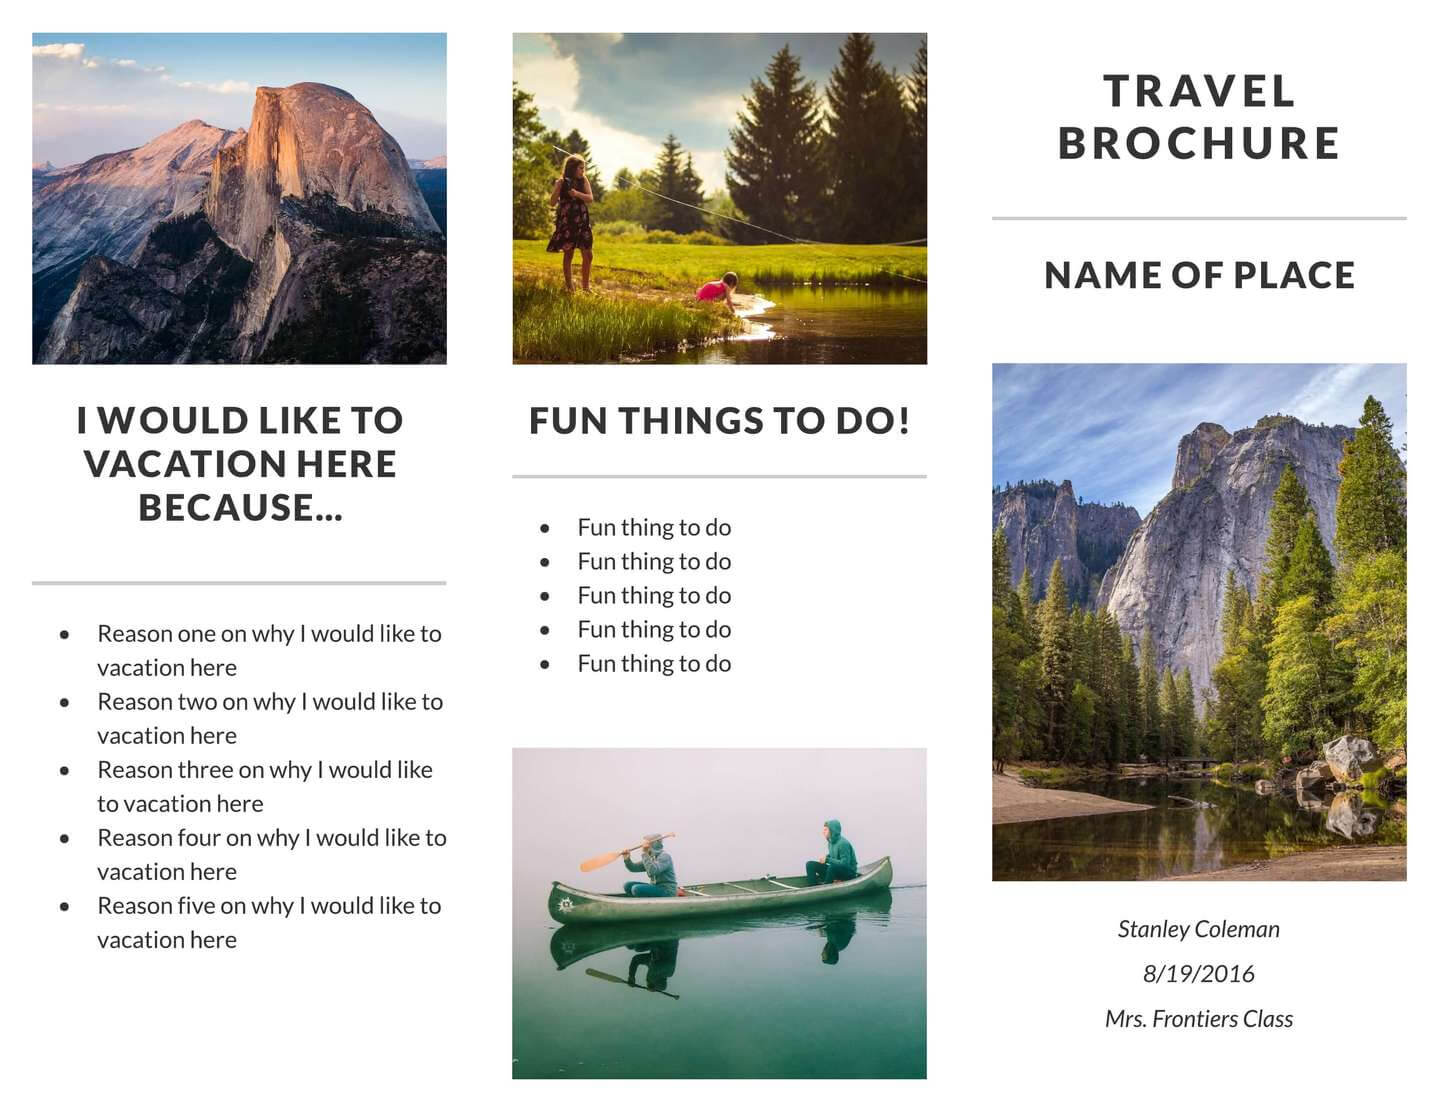 Recreation Travel Brochure Template | Lucidpress With Regard To Travel Brochure Template For Students